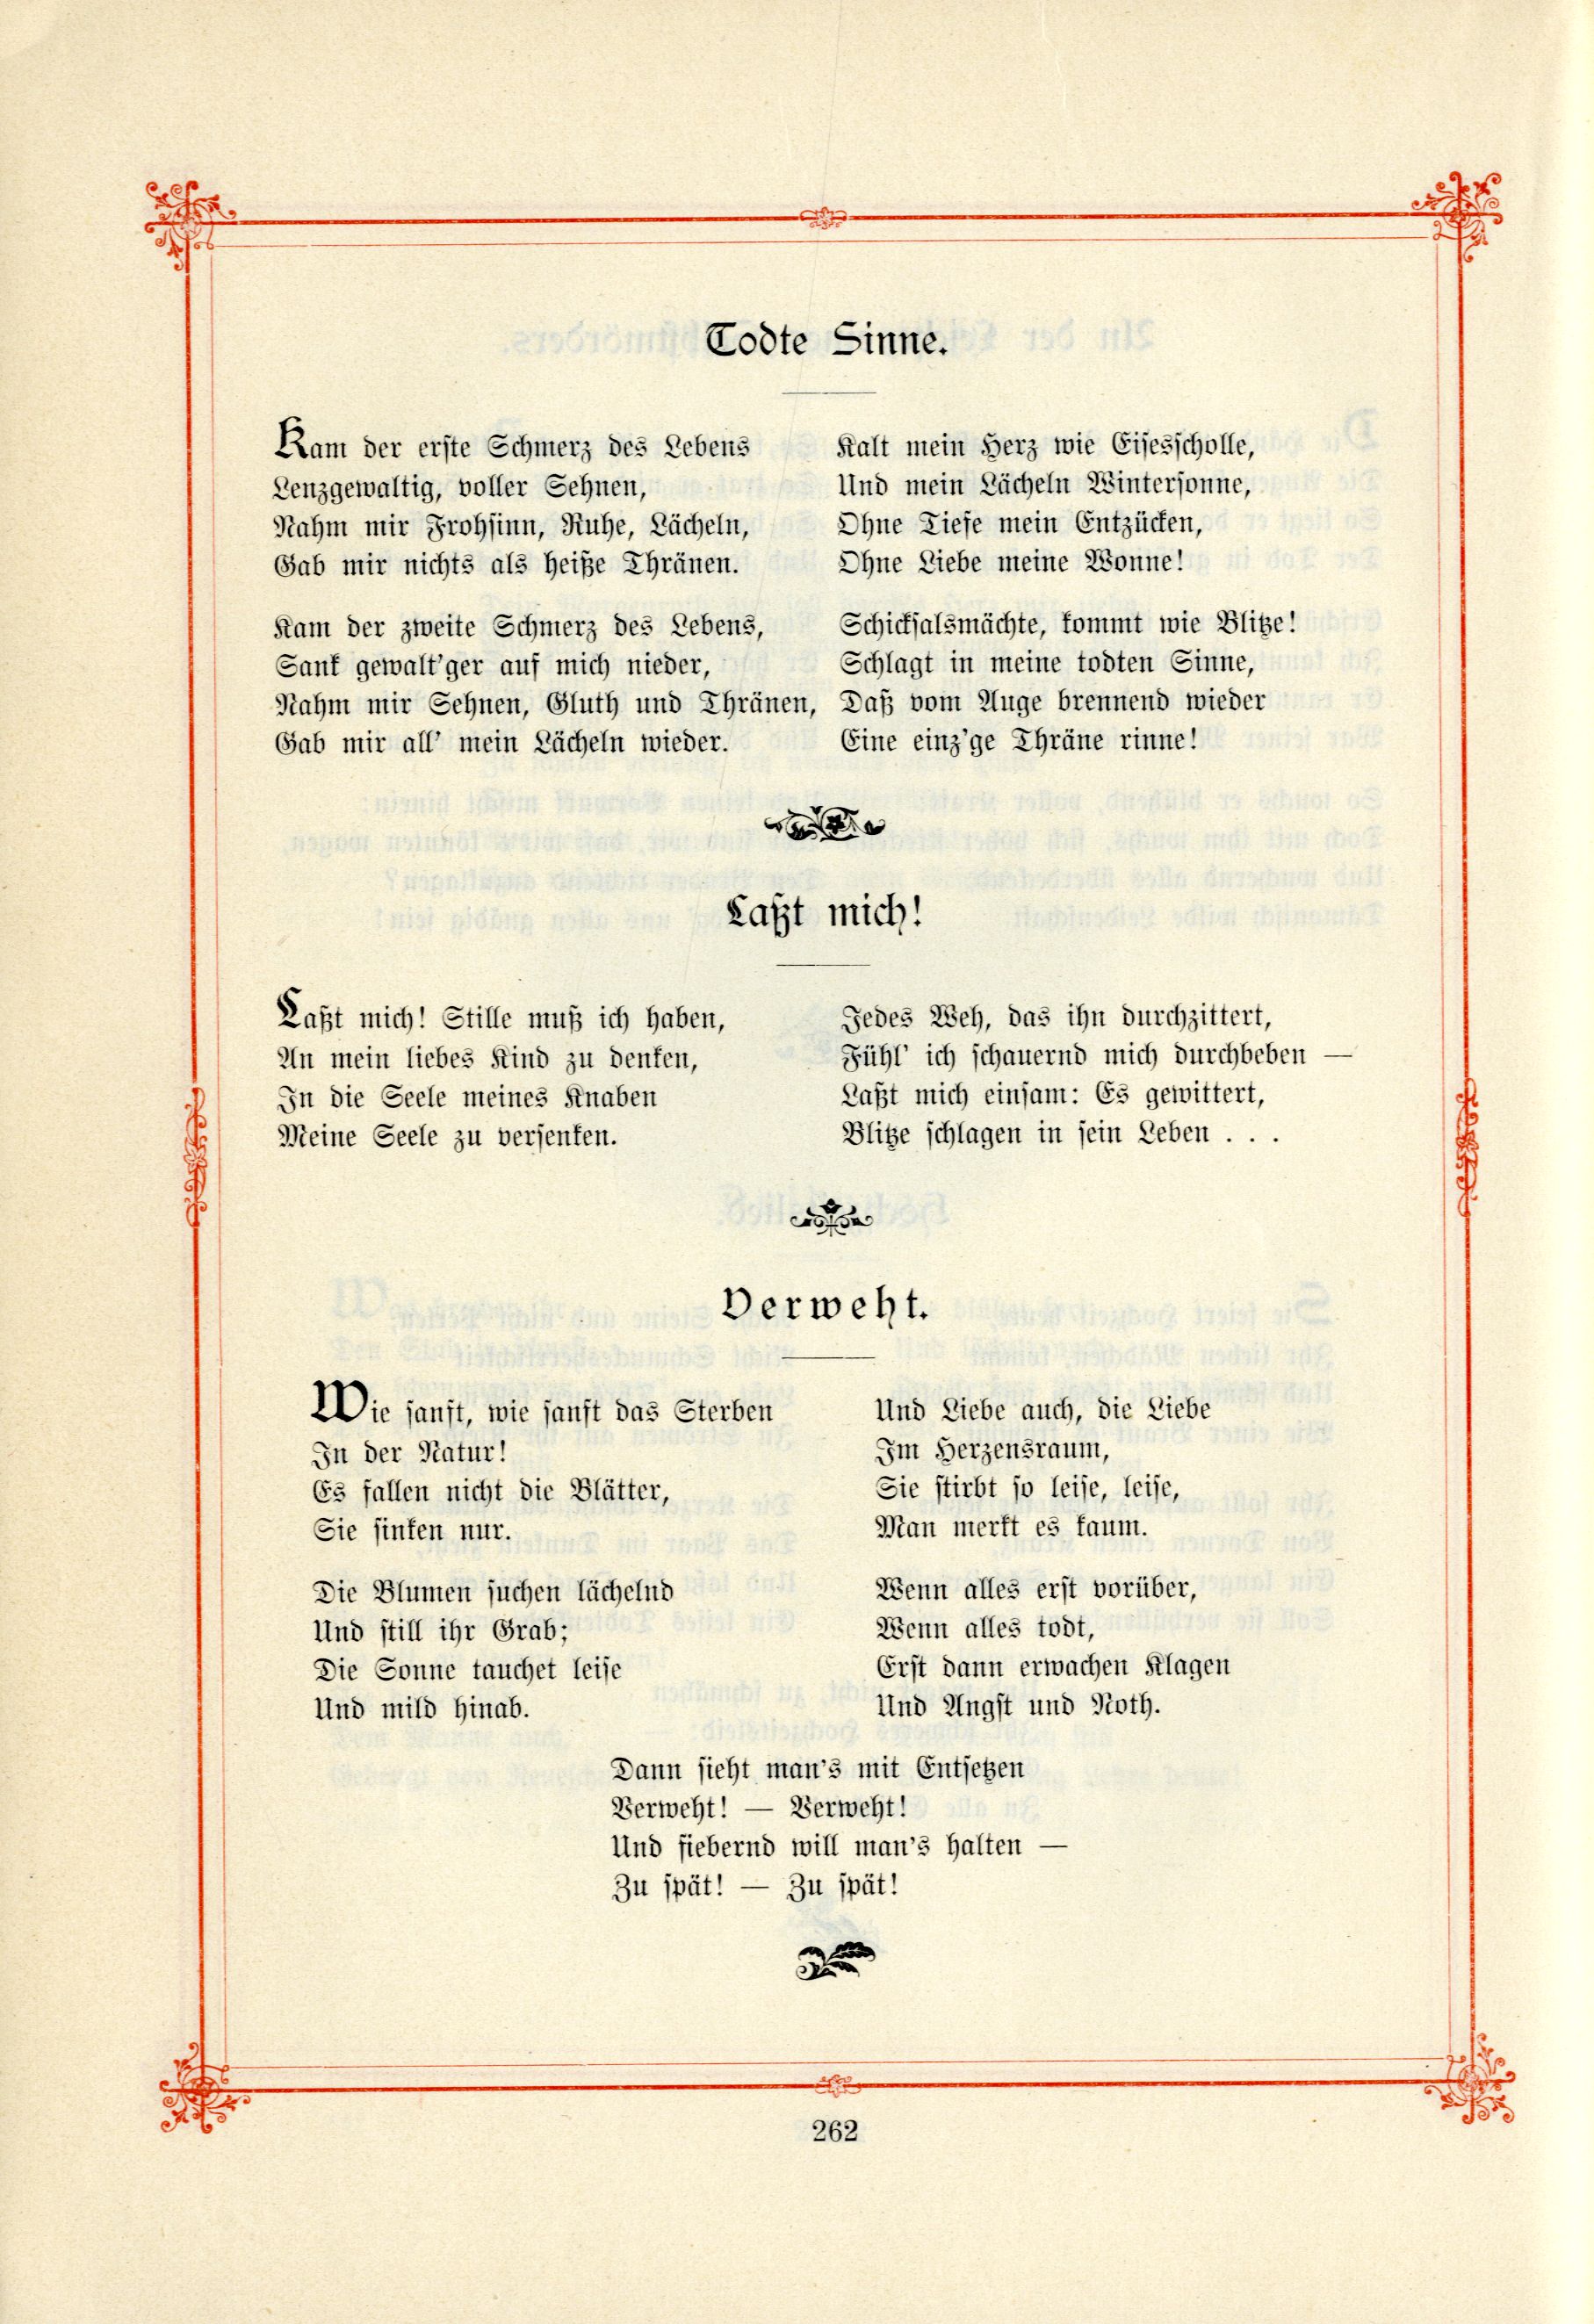 Verweht (1895) | 1. (262) Haupttext